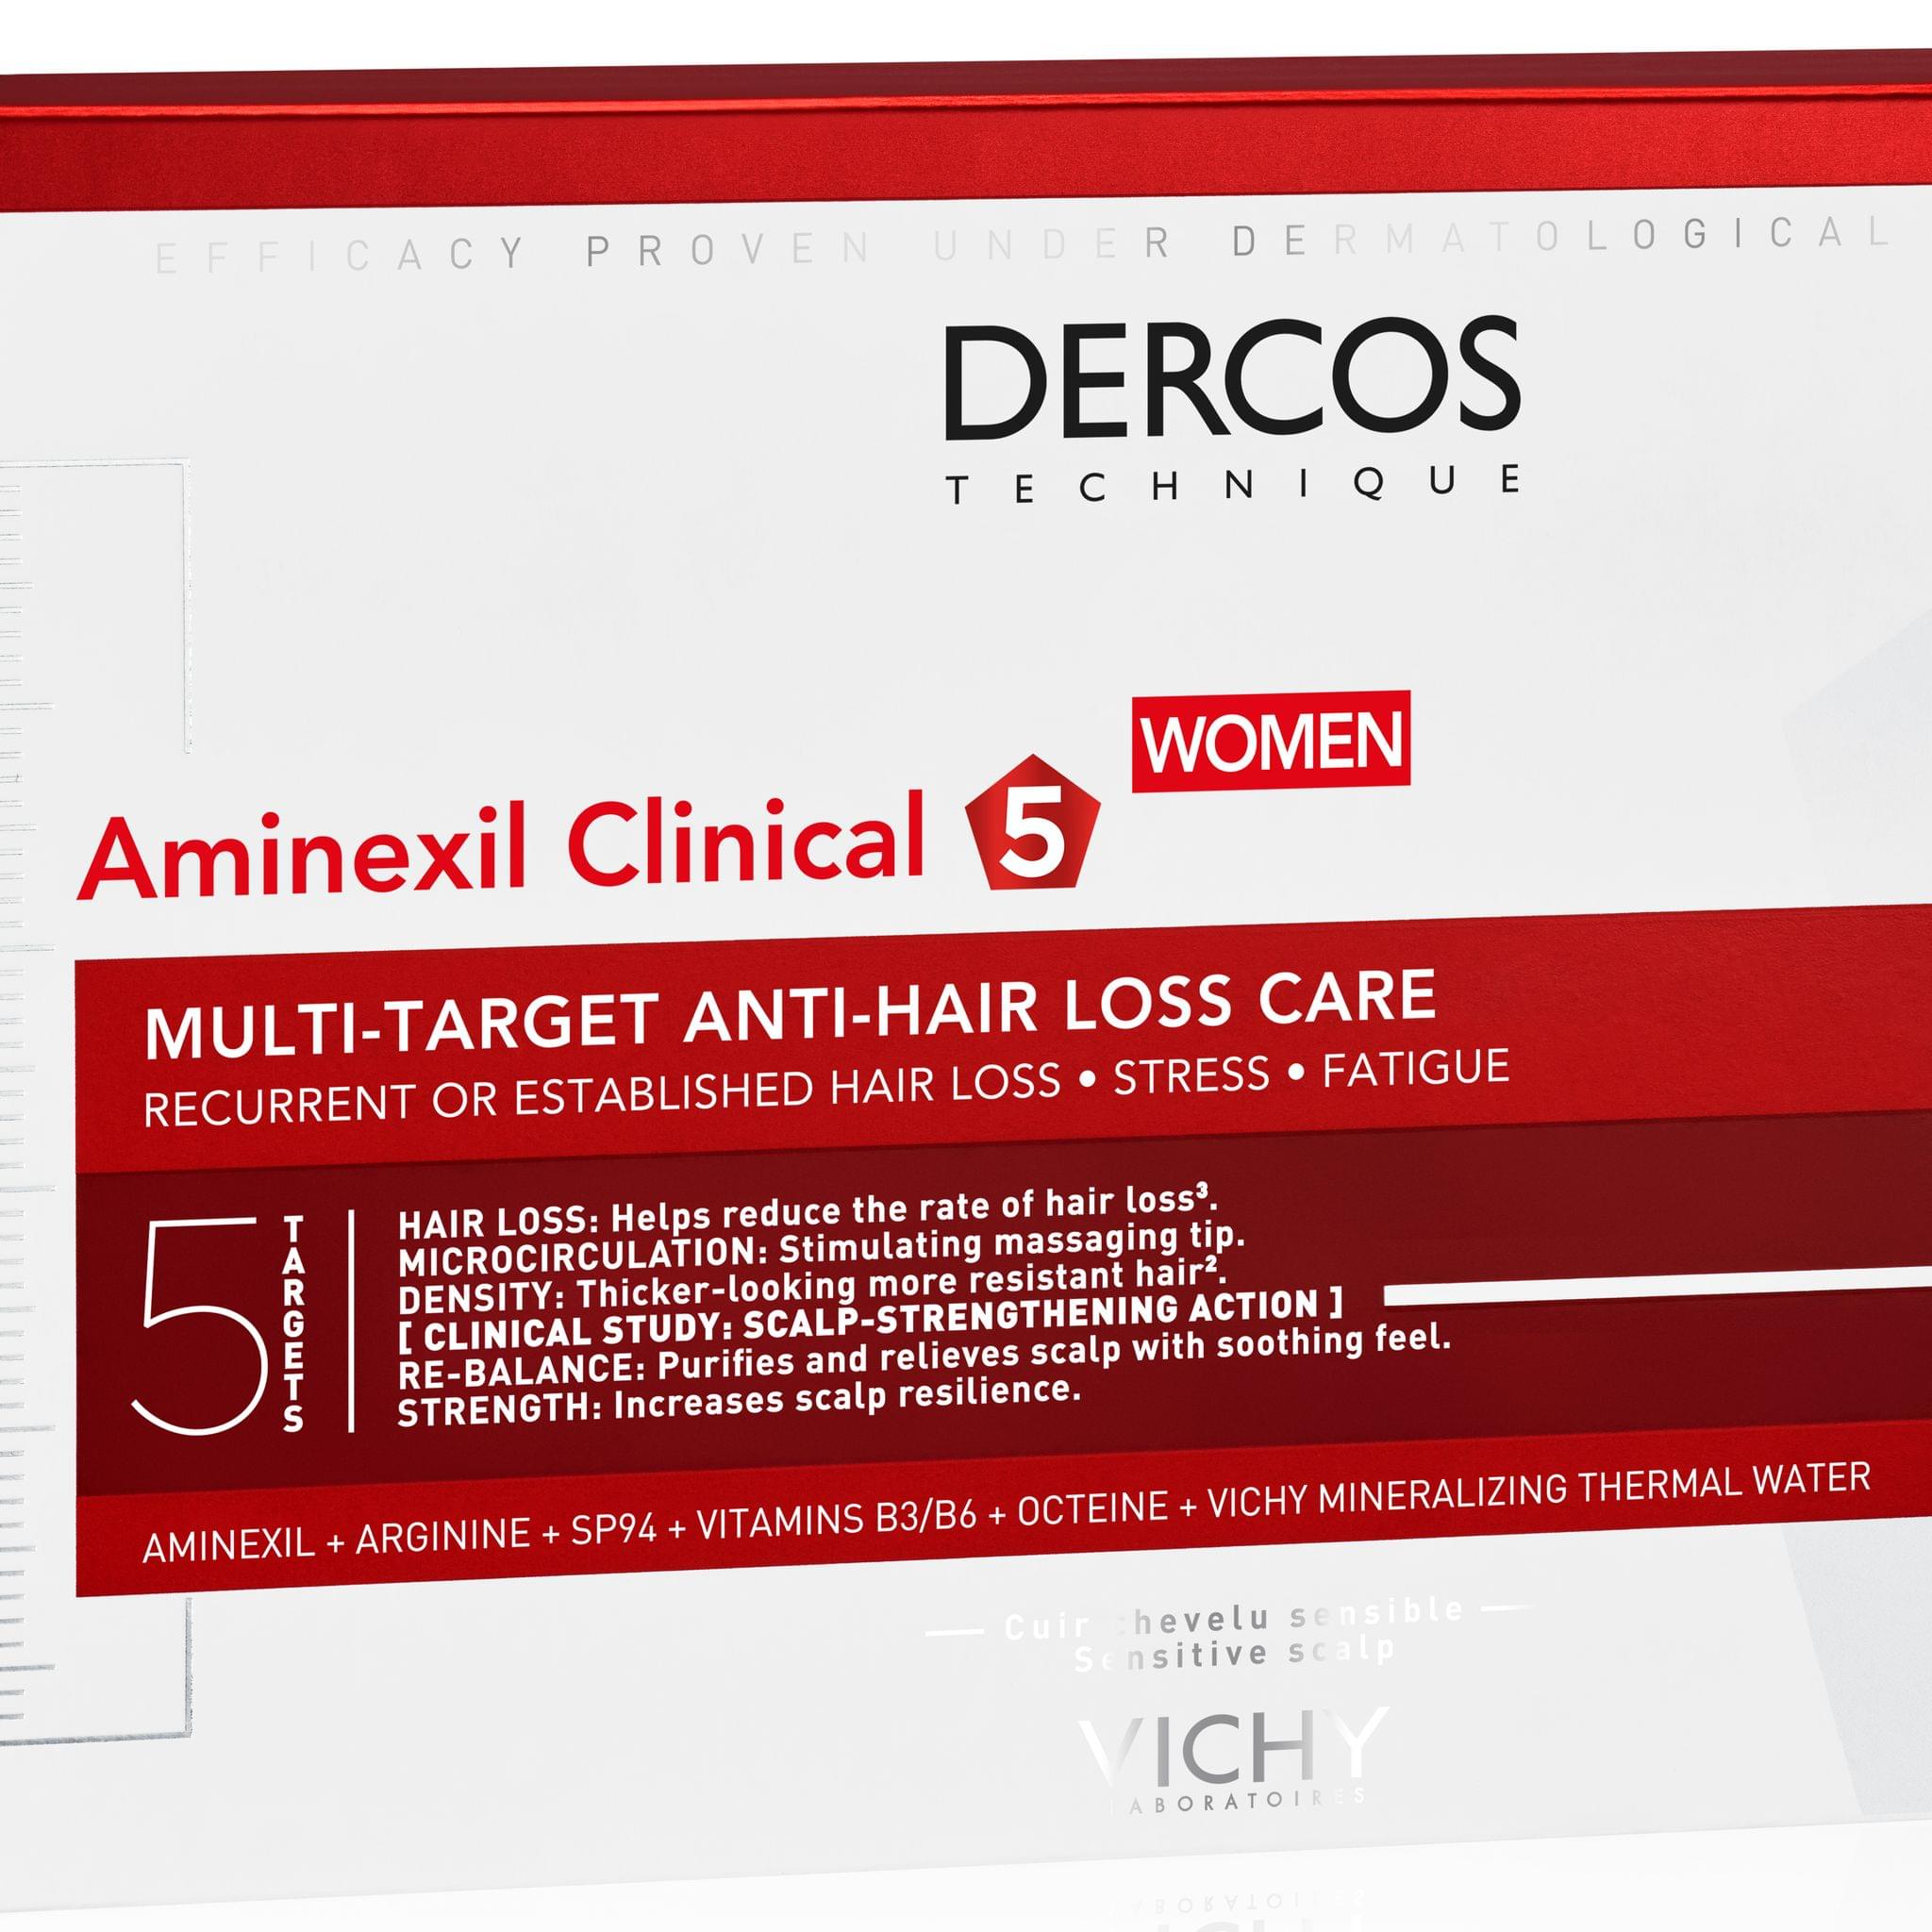 ديركوس أمينيكسيل كلينيكال 5 - للنساء للعناية ضد تساقط الشعر ٢١ x ٦ مل